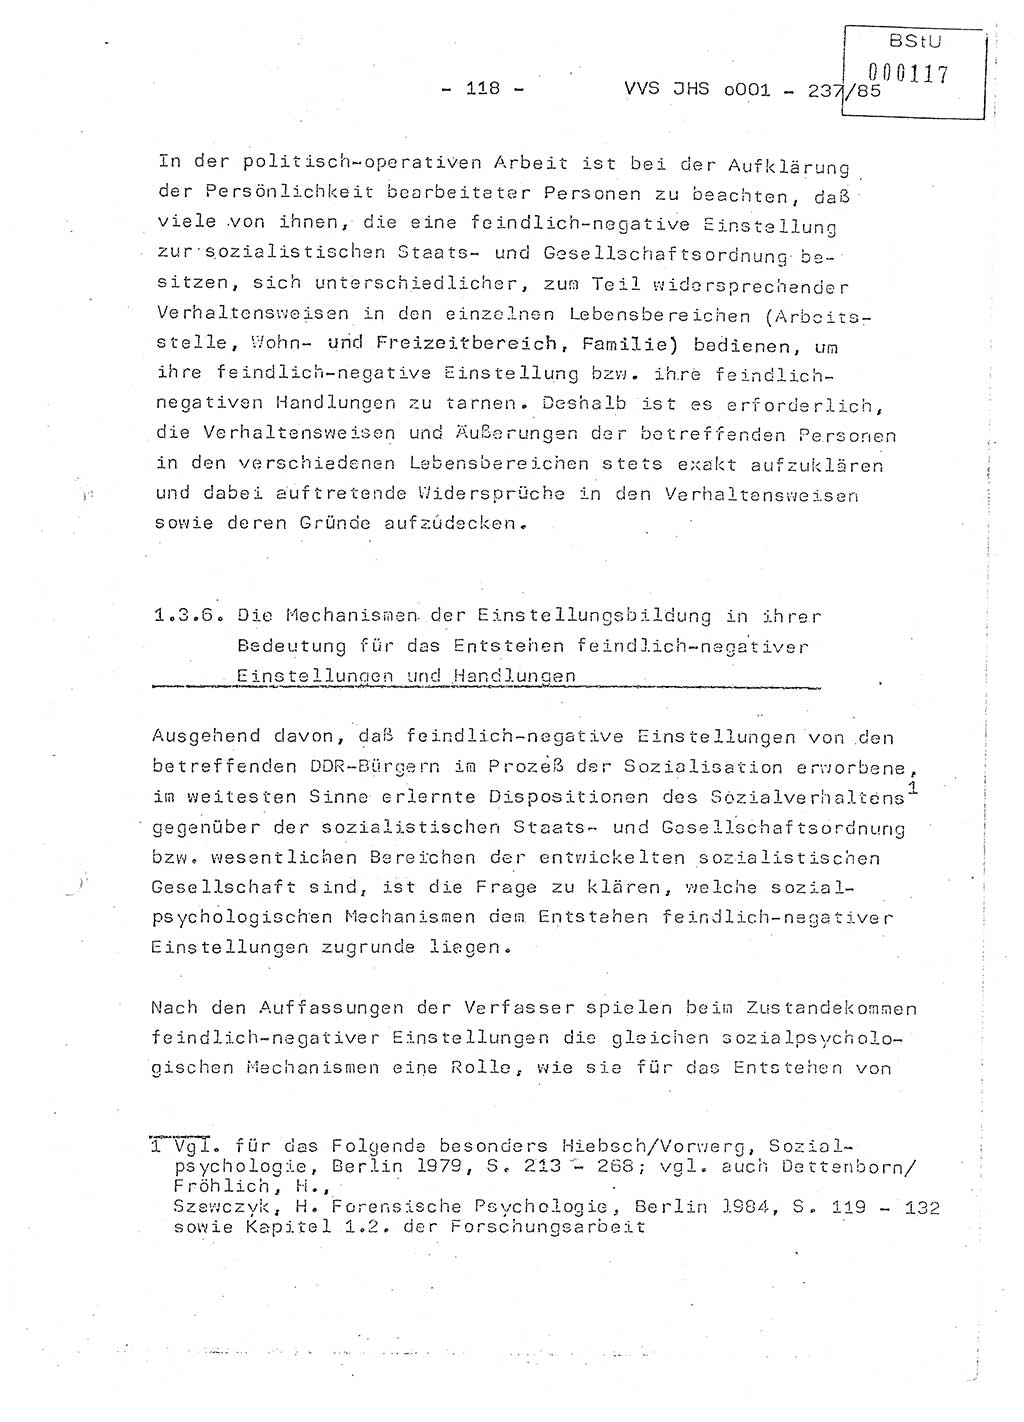 Dissertation Oberstleutnant Peter Jakulski (JHS), Oberstleutnat Christian Rudolph (HA Ⅸ), Major Horst Böttger (ZMD), Major Wolfgang Grüneberg (JHS), Major Albert Meutsch (JHS), Ministerium für Staatssicherheit (MfS) [Deutsche Demokratische Republik (DDR)], Juristische Hochschule (JHS), Vertrauliche Verschlußsache (VVS) o001-237/85, Potsdam 1985, Seite 118 (Diss. MfS DDR JHS VVS o001-237/85 1985, S. 118)